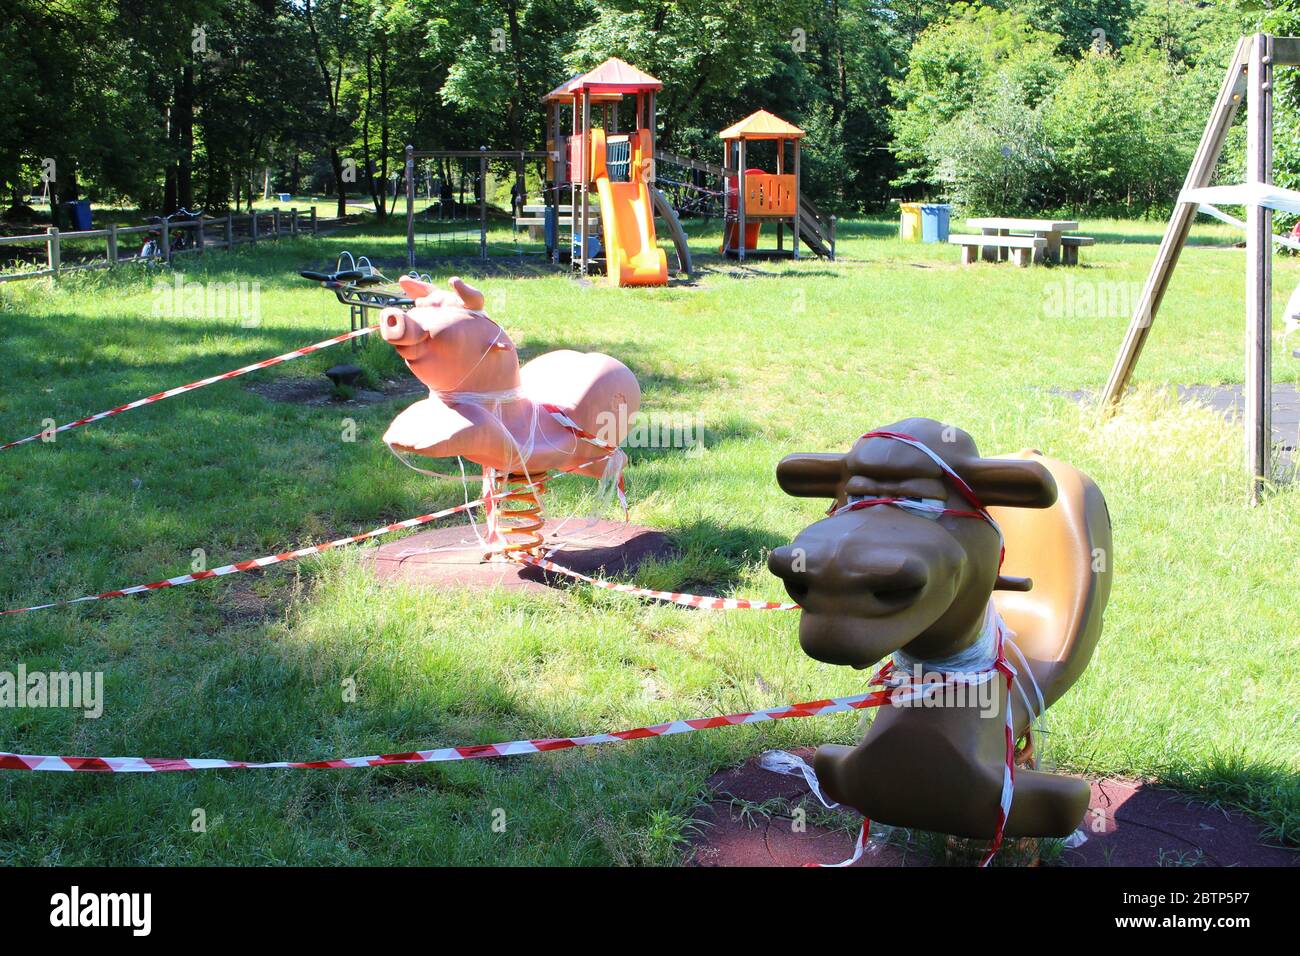 Playground italy immagini e fotografie stock ad alta risoluzione - Alamy